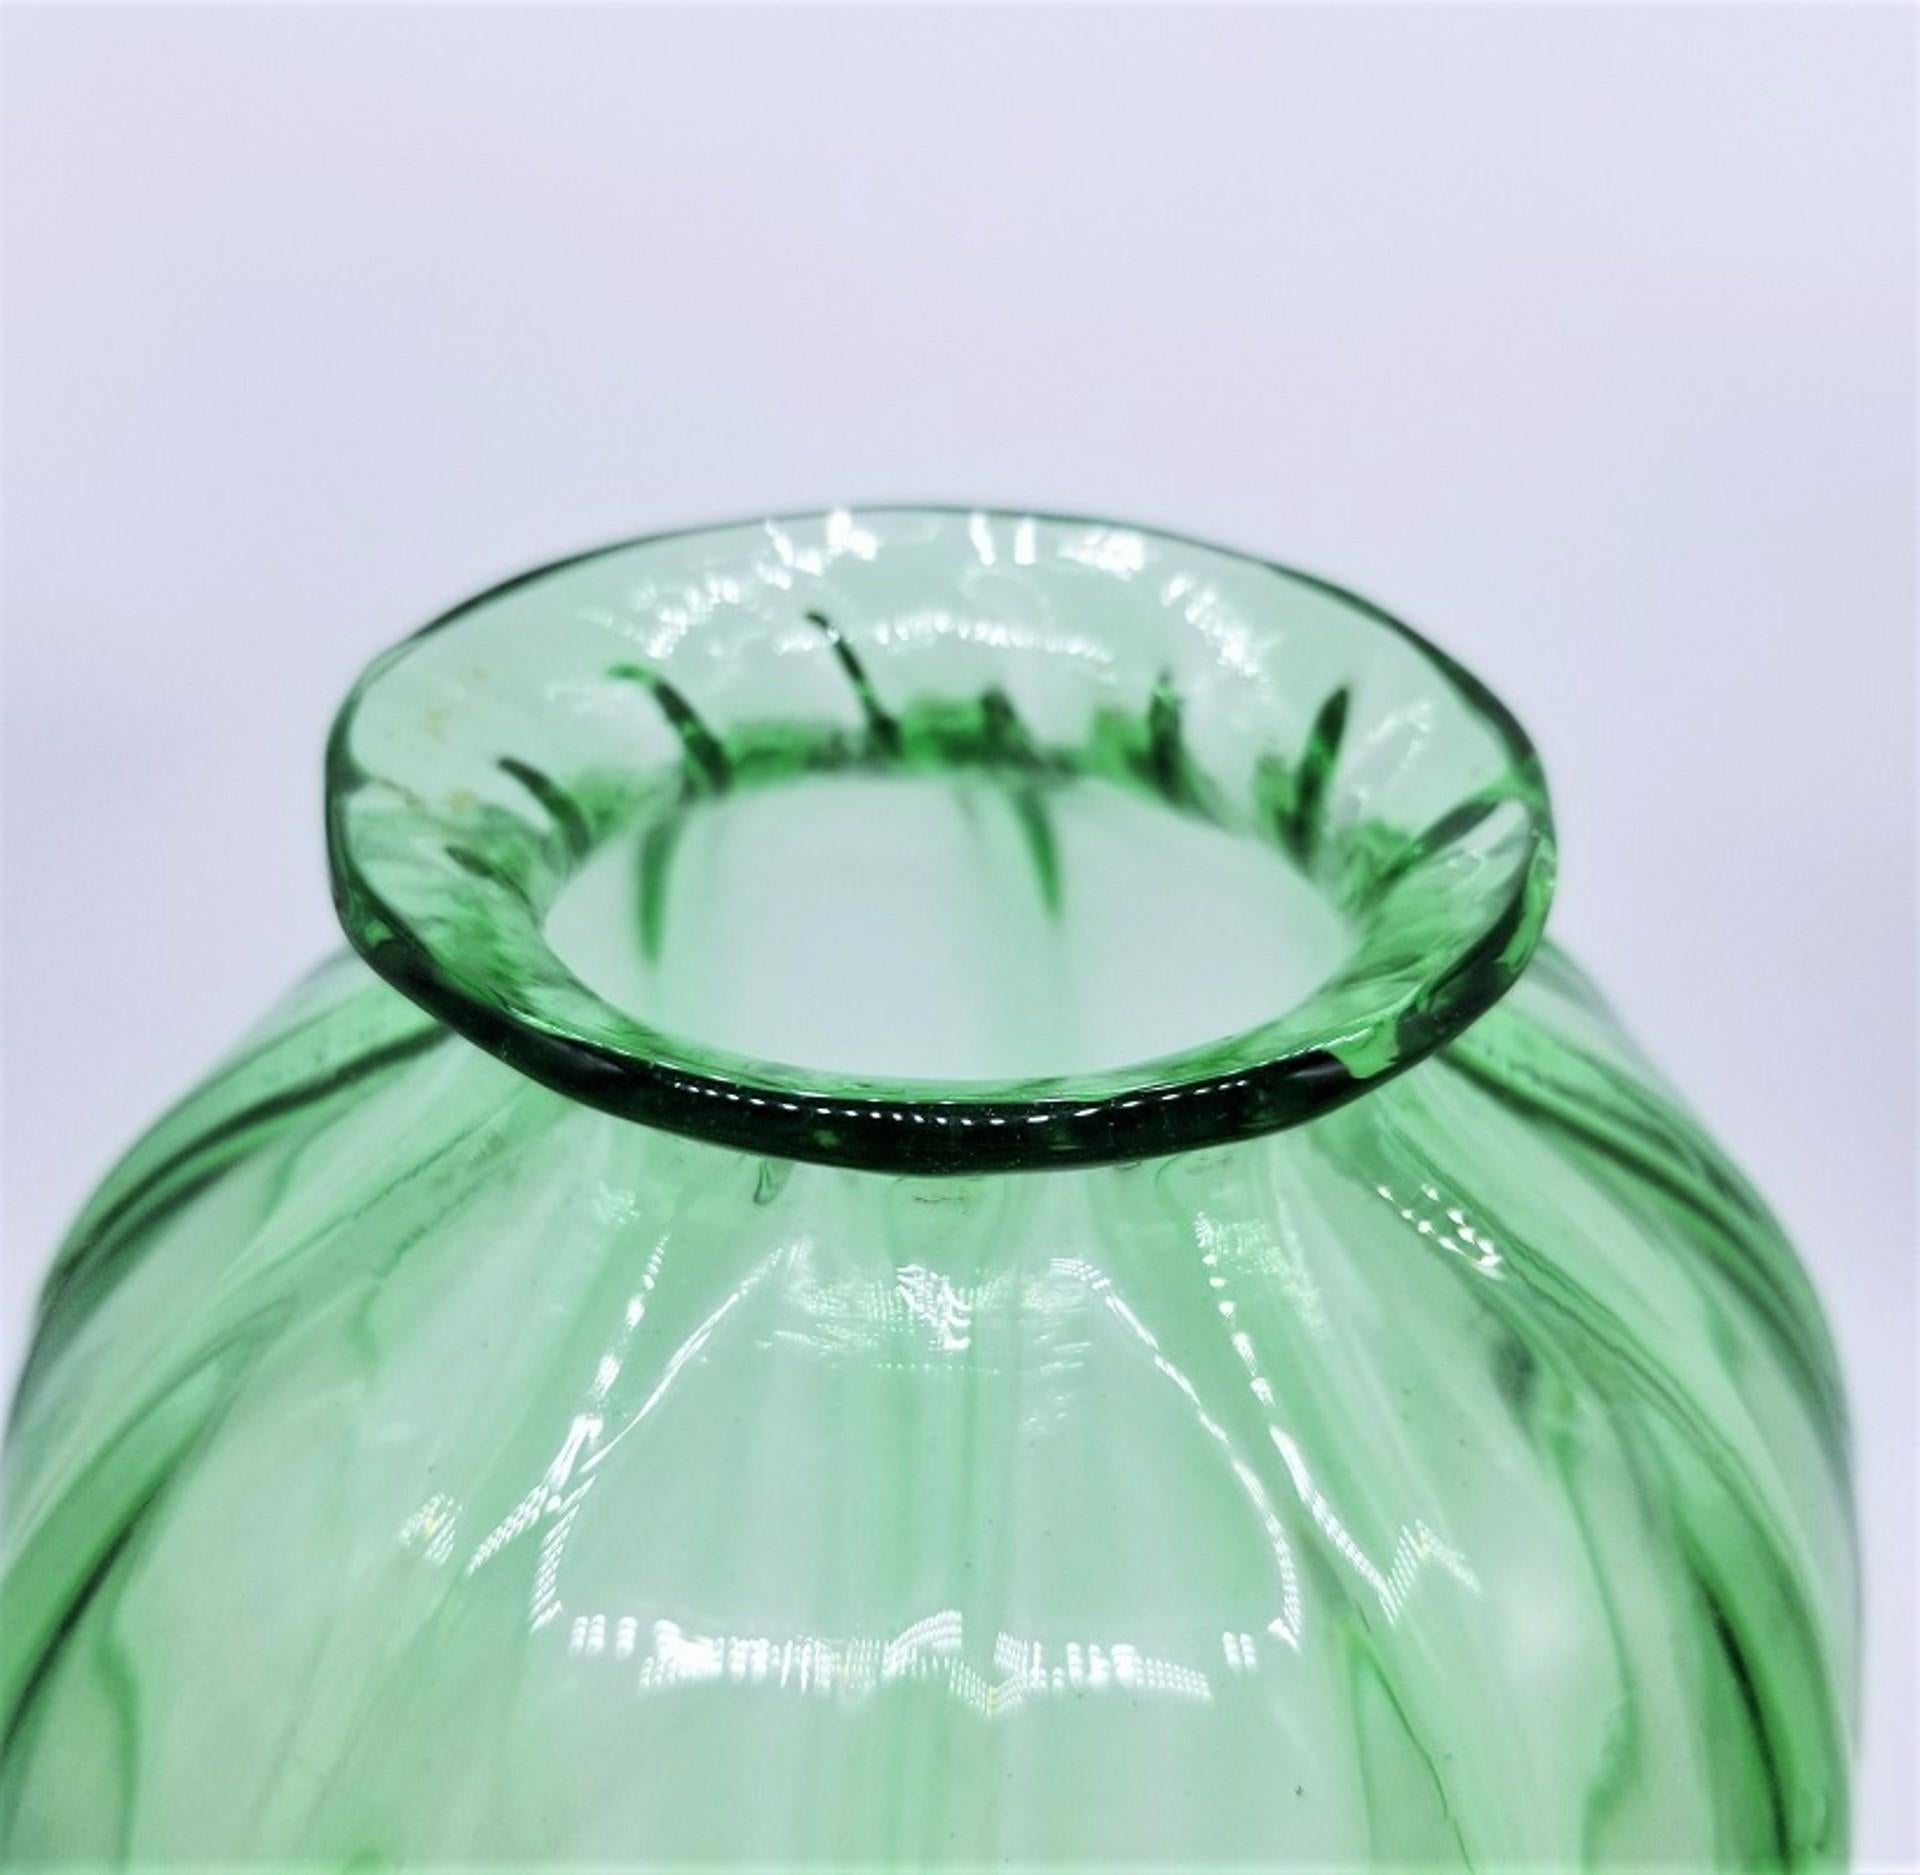 Murano Glass
Costolato Vase Light Green, circa 1930
Blown glass
13.25 x 6.25 x 6.25 in